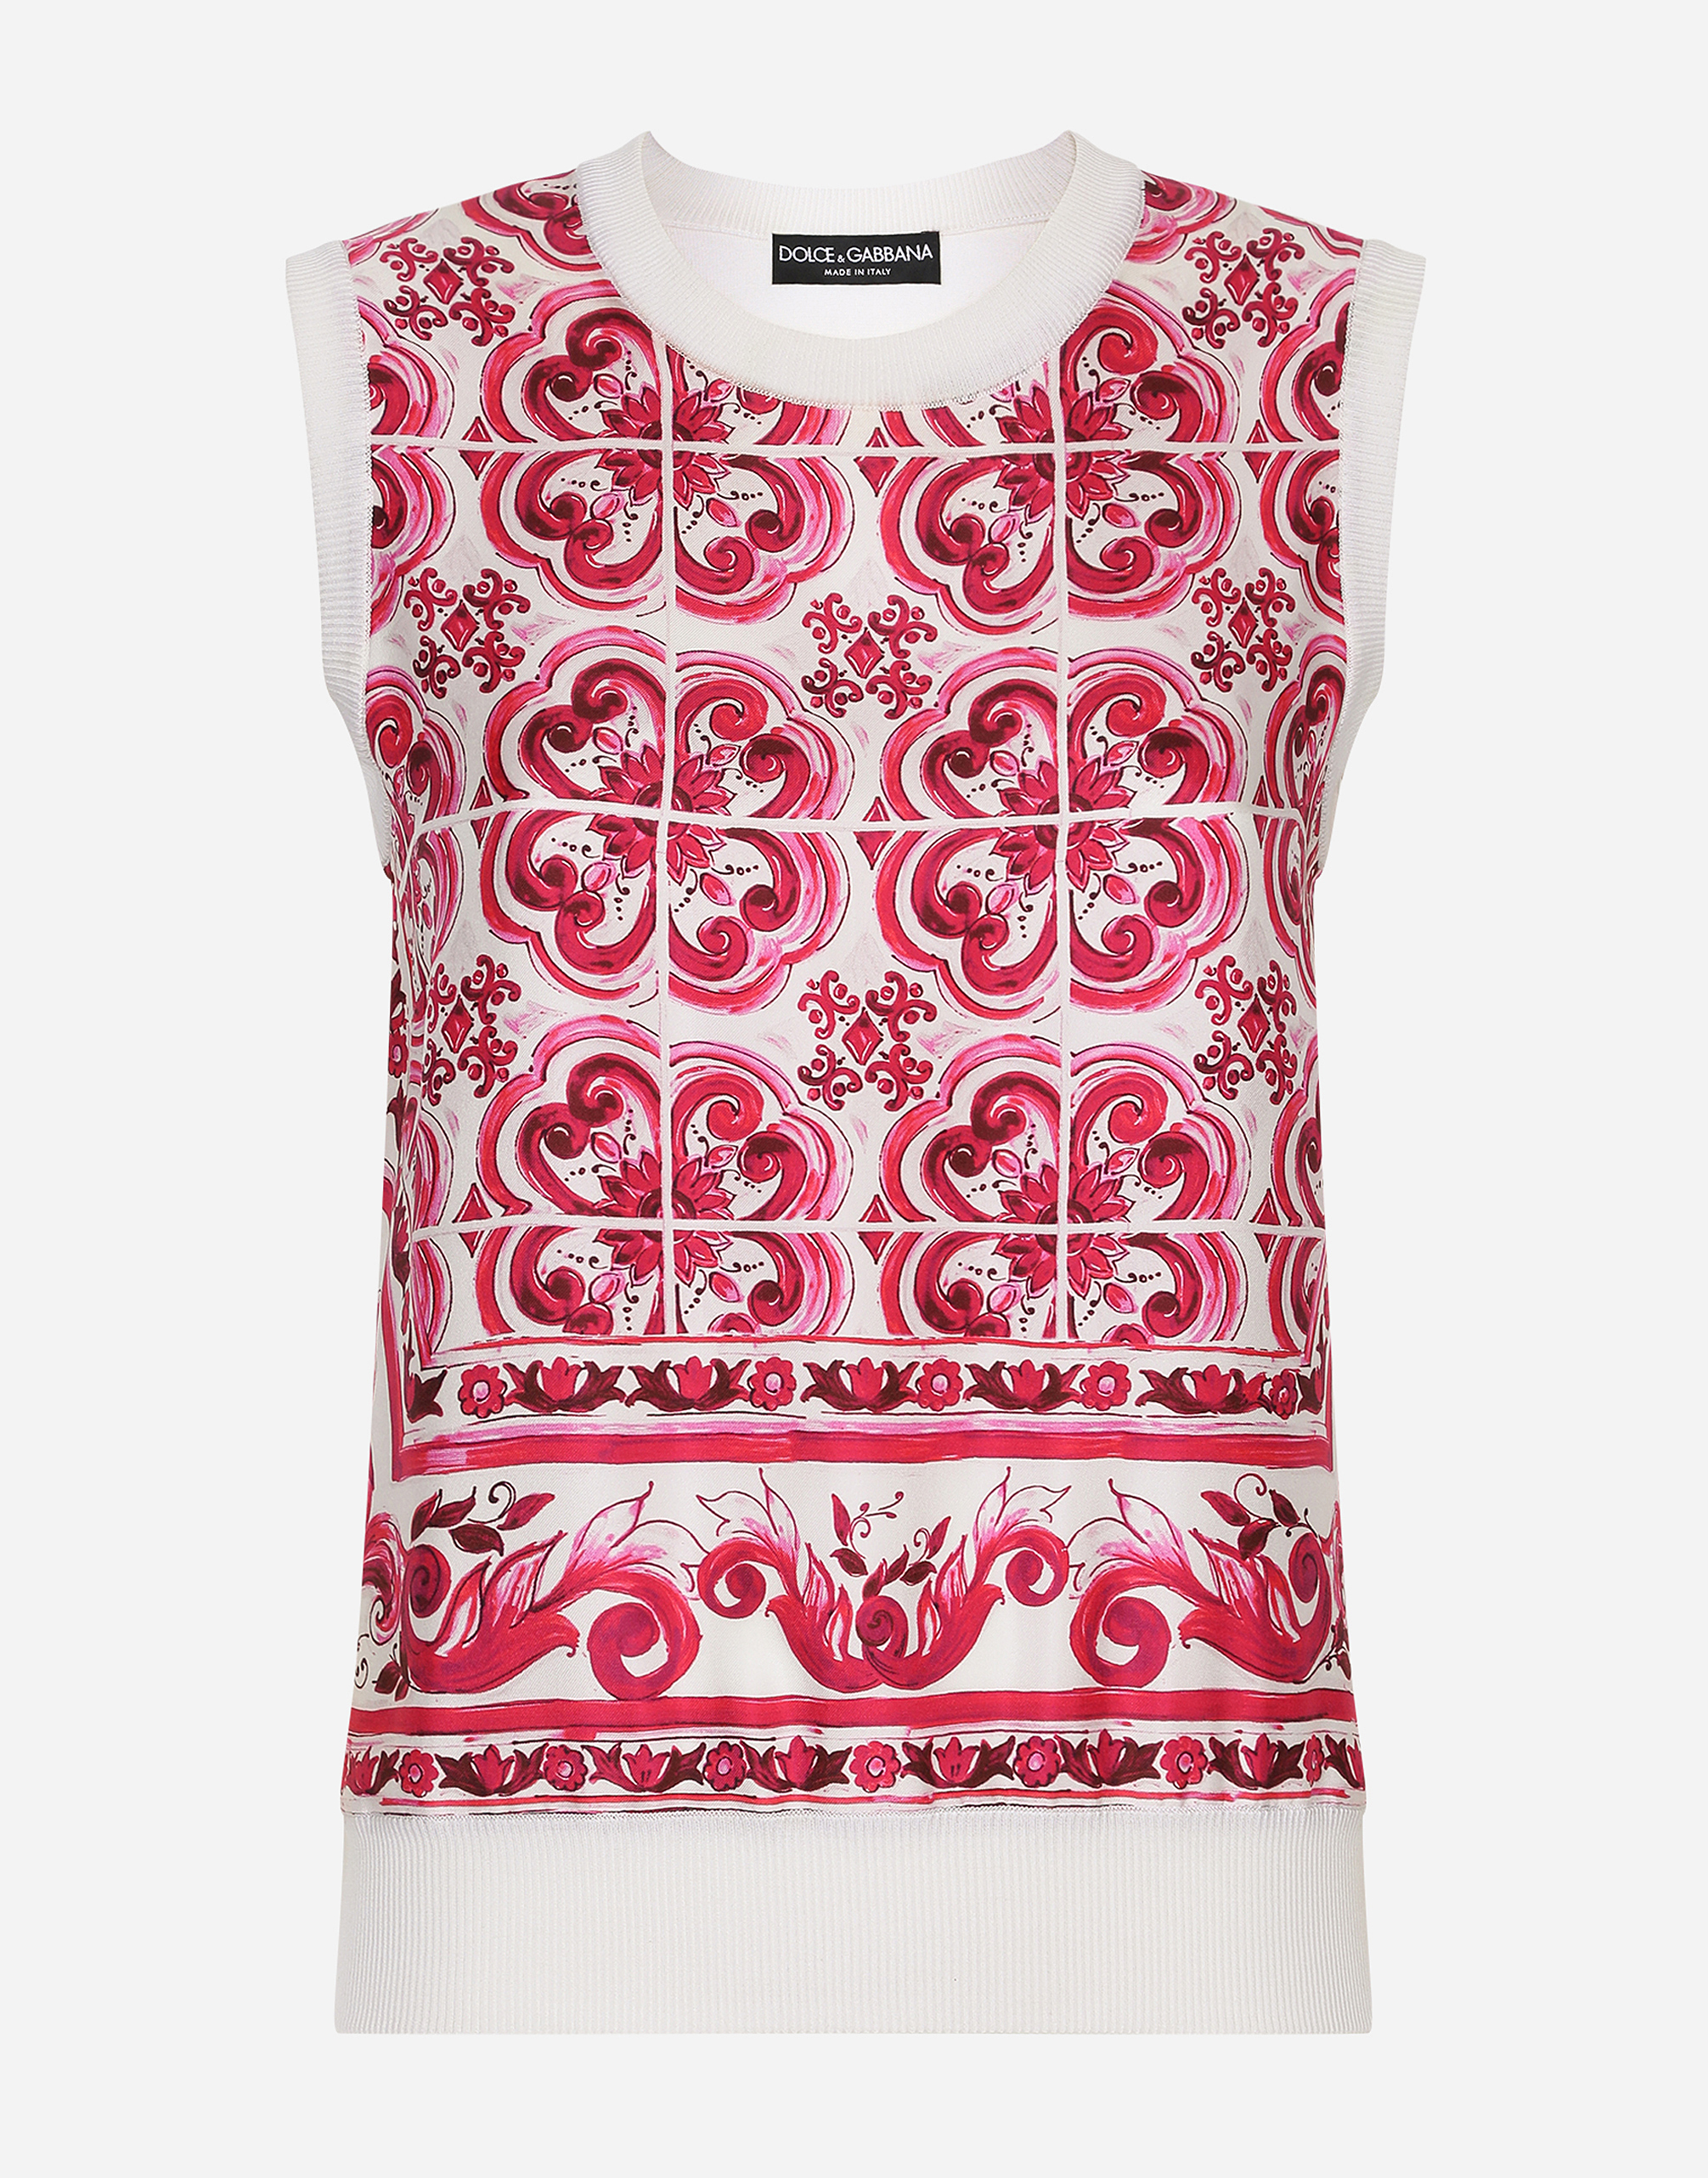 Dolce & Gabbana Silk And Twill Maiolica Print Sweater In Multicolor